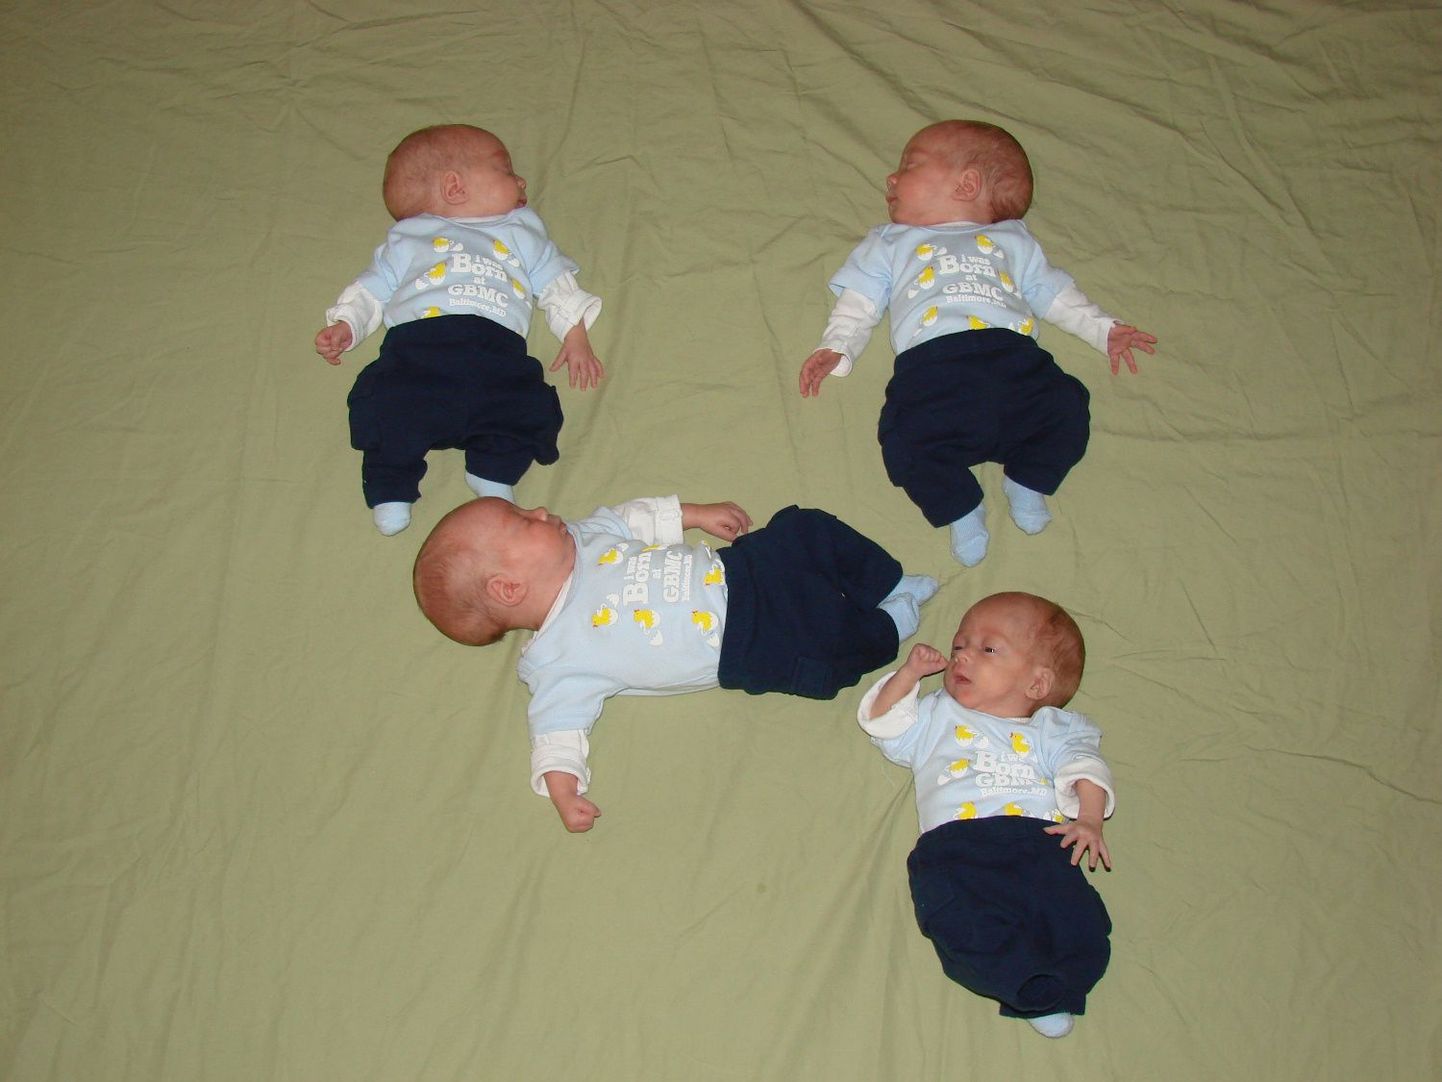 Ameeriklanna sünnitas neli poissi, kellest kolm on identsed